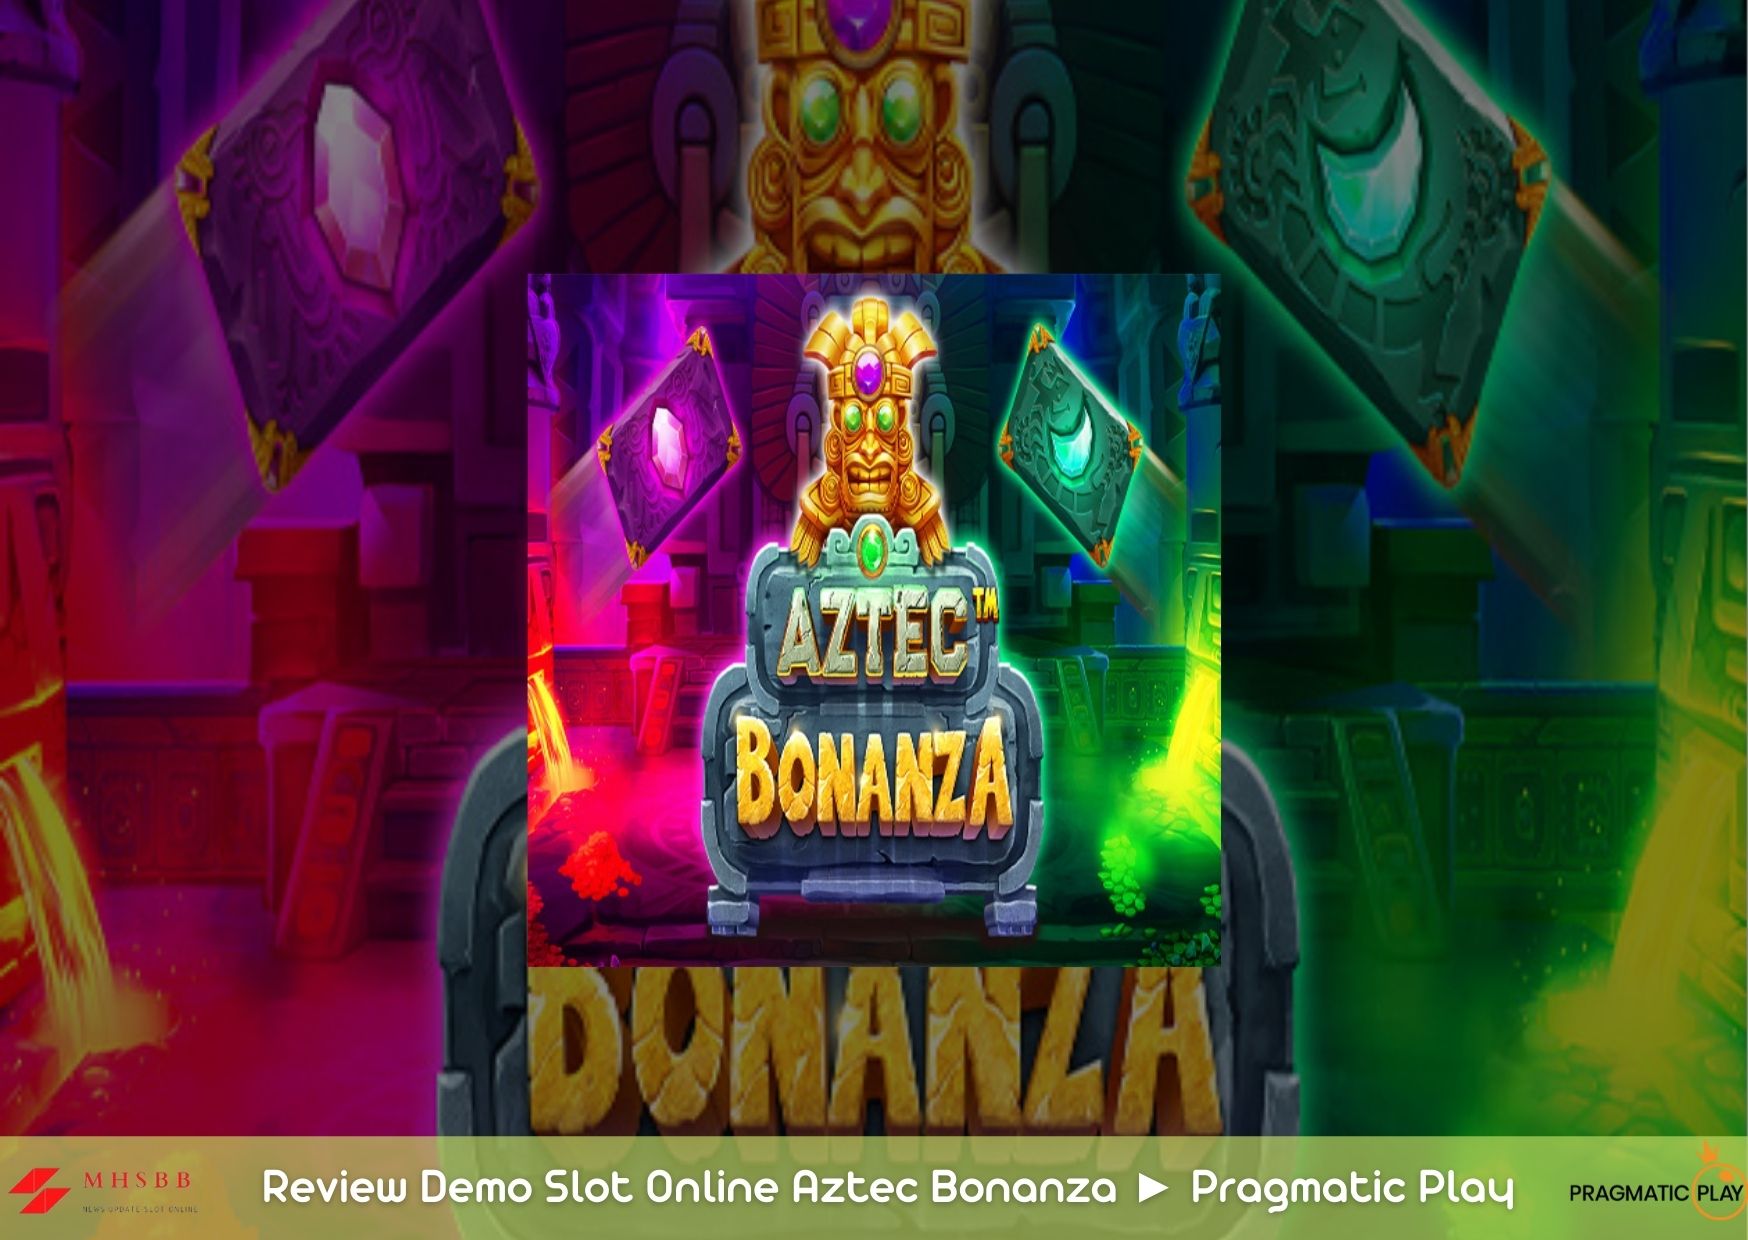 Review Demo Slot Online Aztec Bonanza ► Pragmatic Play